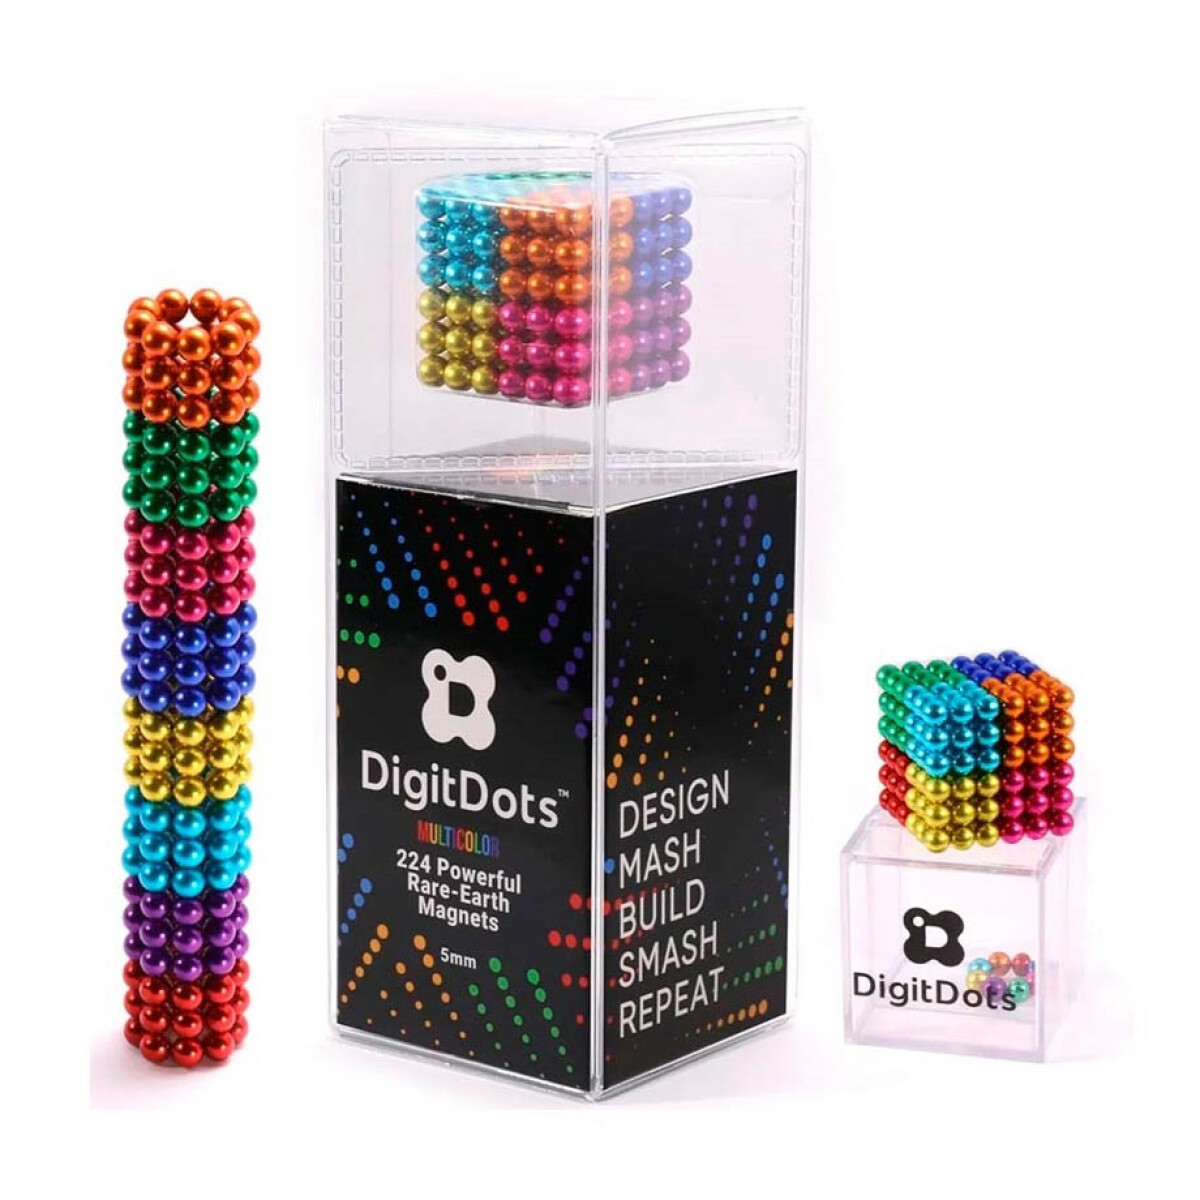 Bolitas Magnéticas 224 Unidades Multicolor 5MM Digidots - 001 — Universo  Binario